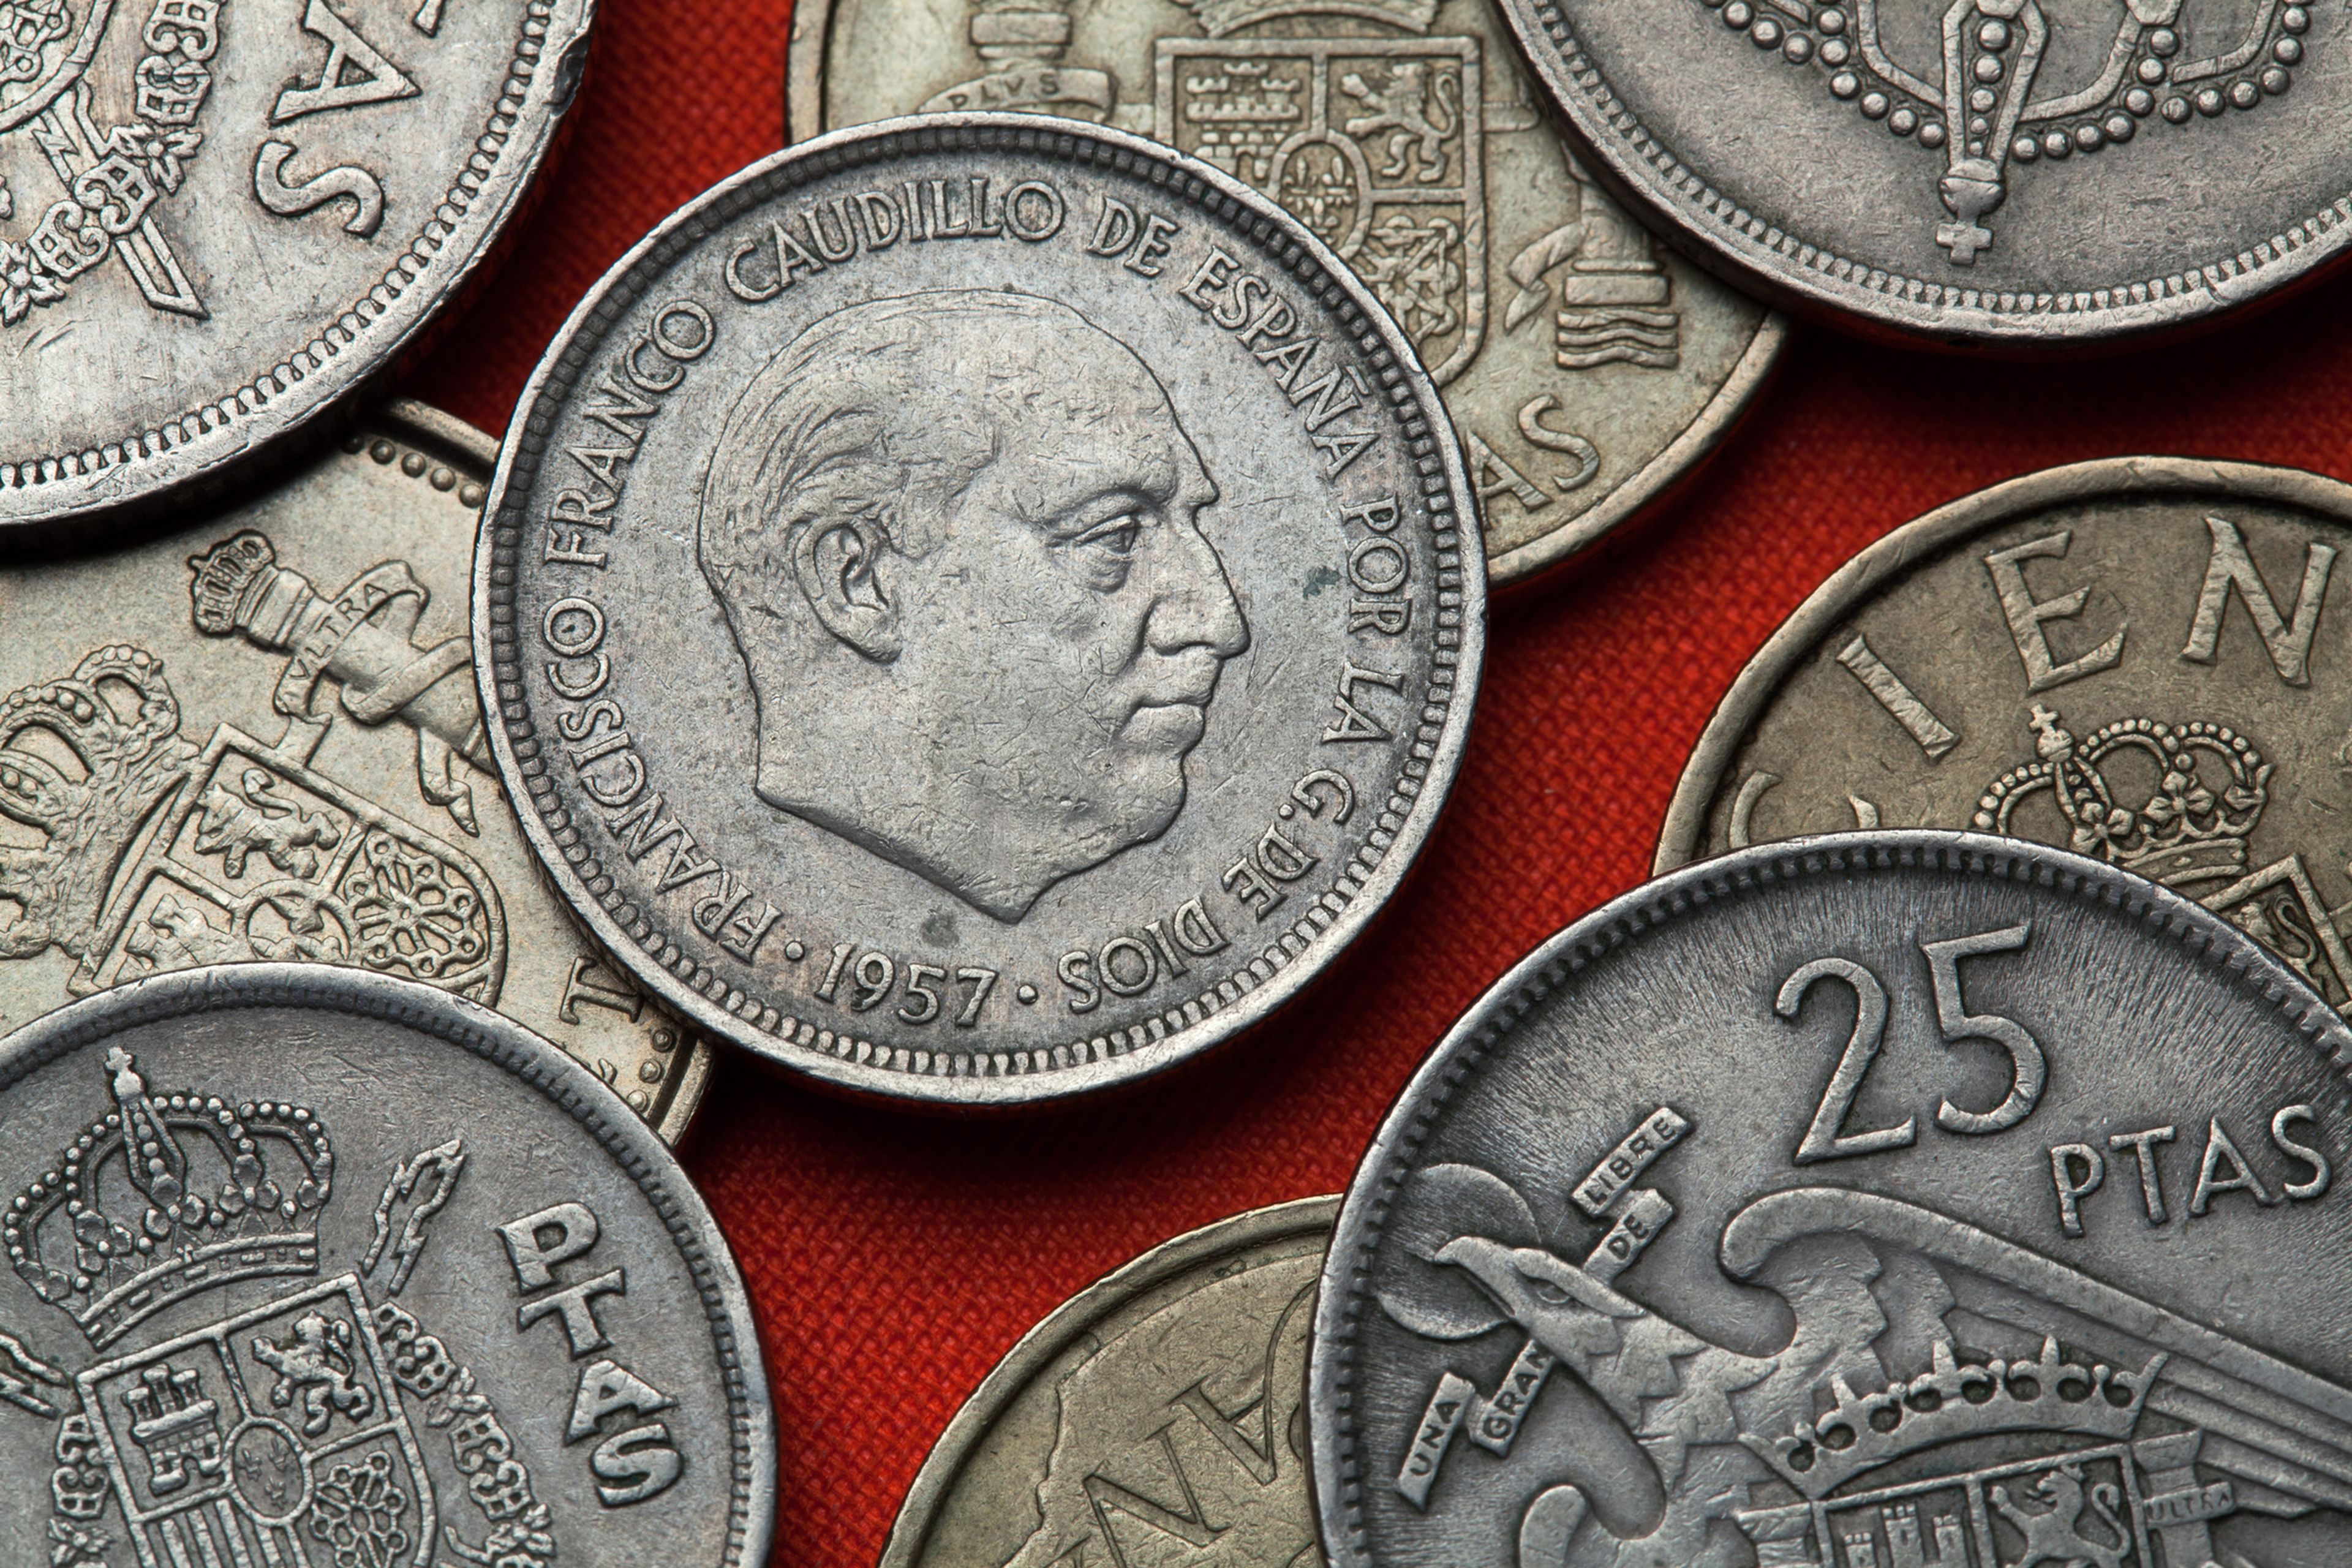 Monedas 5 pesetas 1957, con cara de Franco